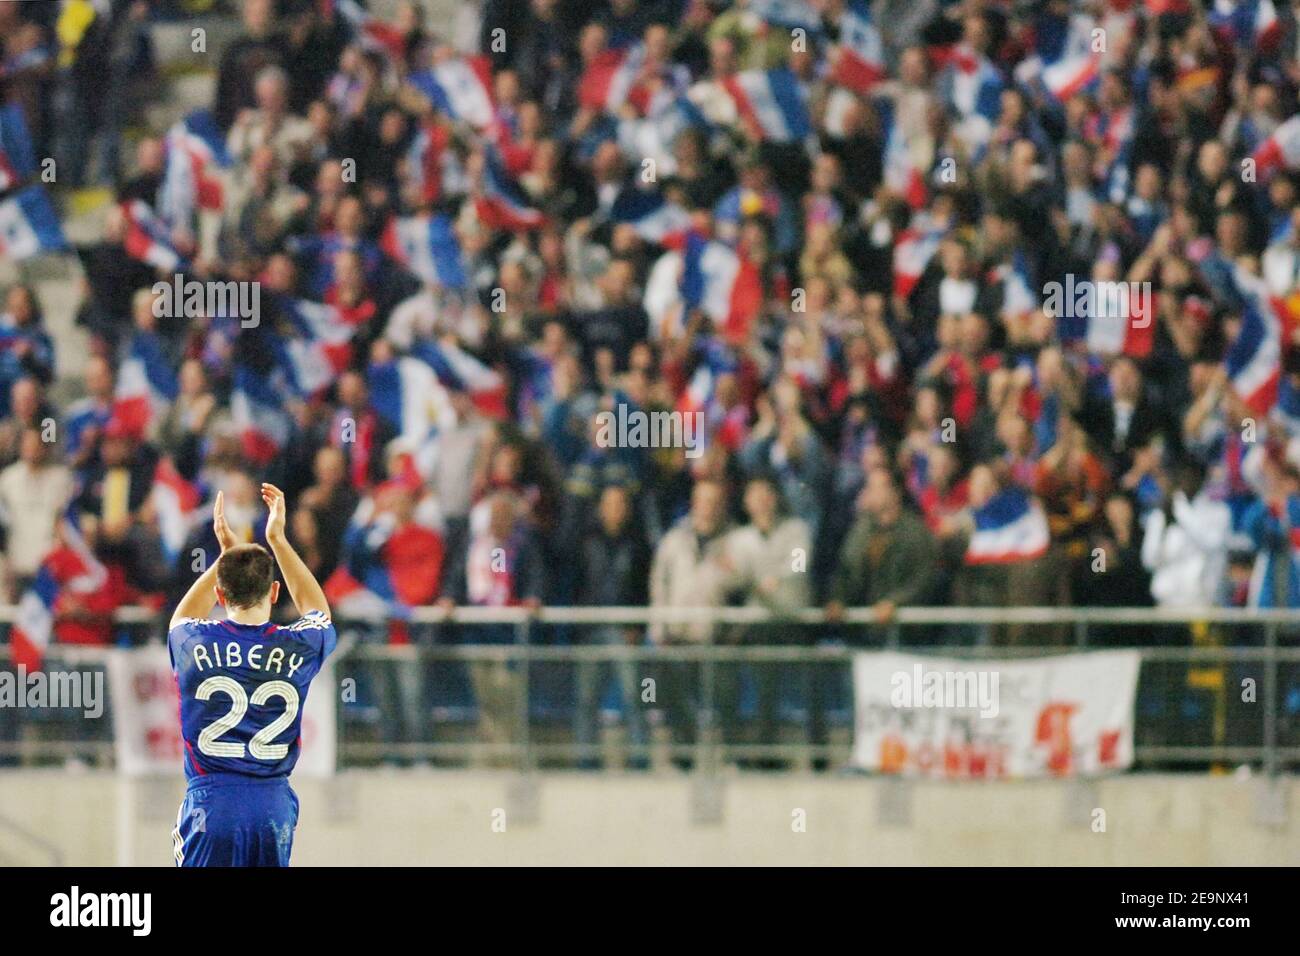 Francia Franck Ribery nel corso della Coppa europea UEFA 2008 Gruppo B partita di qualificazione Francia vs Isole Feroe allo Stade Bonal, a Montbeliard, Francia, il 11 ottobre 2006. La Francia ha vinto 5-0. Foto di Nicolas Gouhier/Cameleon/ABACAPRESS.COM Foto Stock